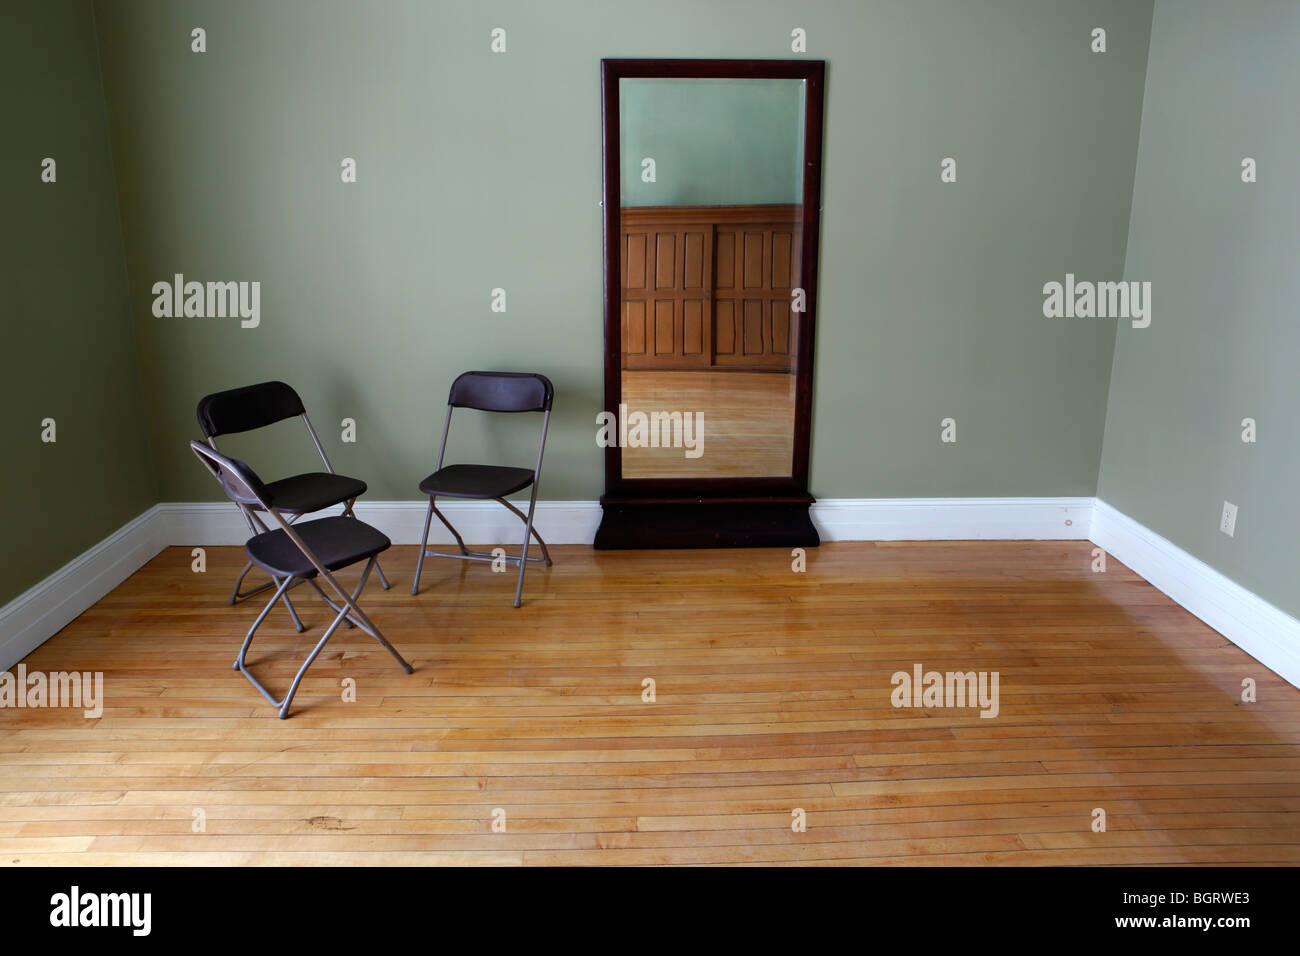 Habitación Vacía, tres sillas plegables, espejo, pisos de madera Foto de stock